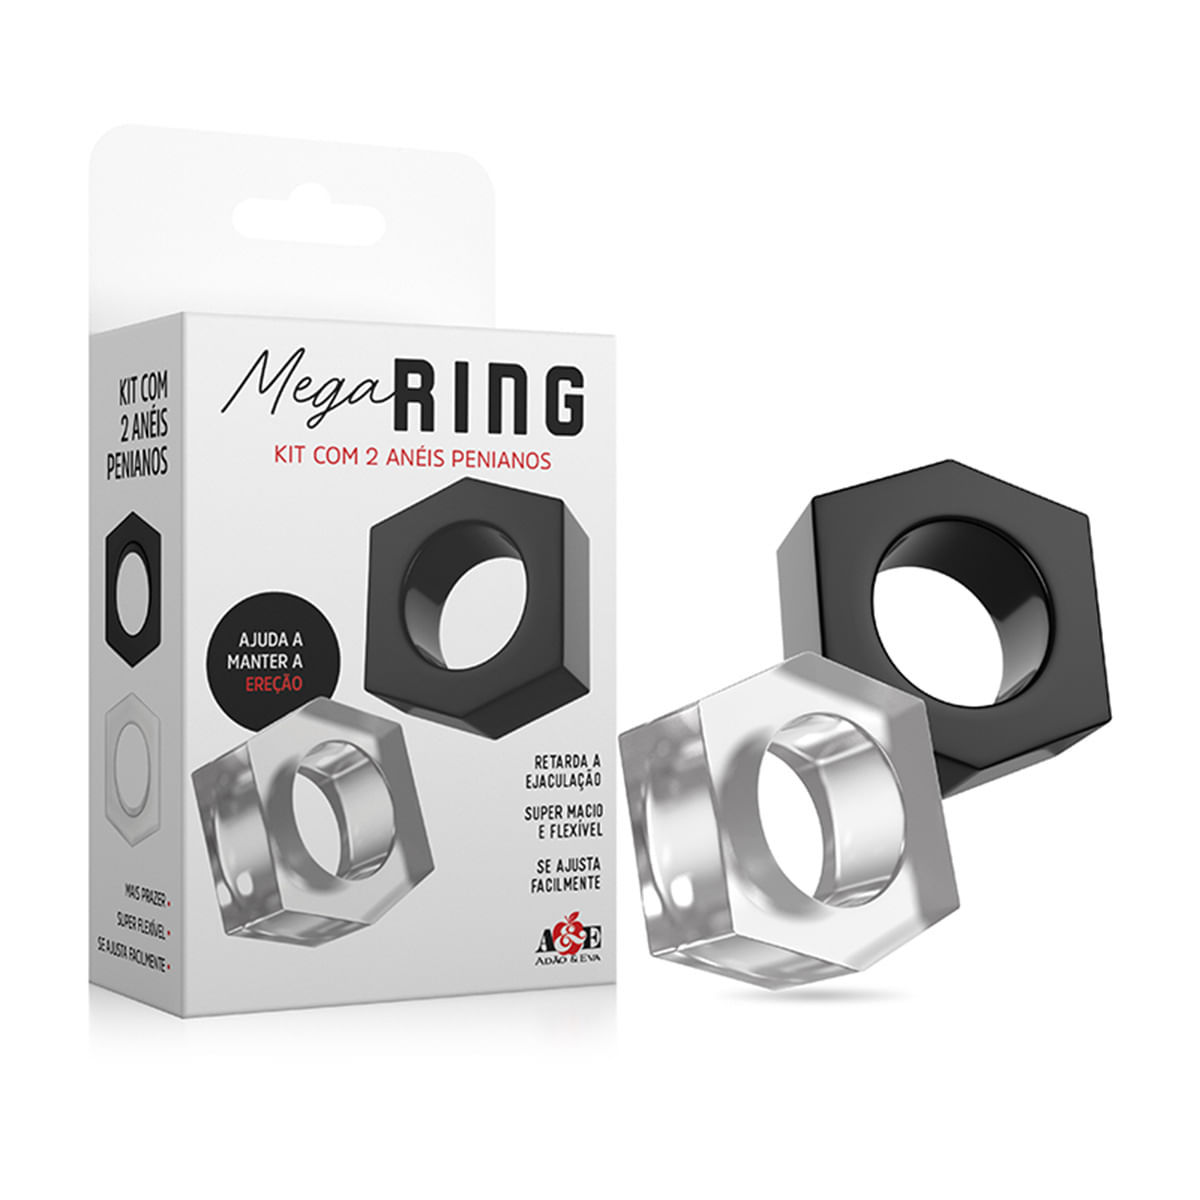 Mega Ring Kit com 2 Aneis Penianos Adão e Eva